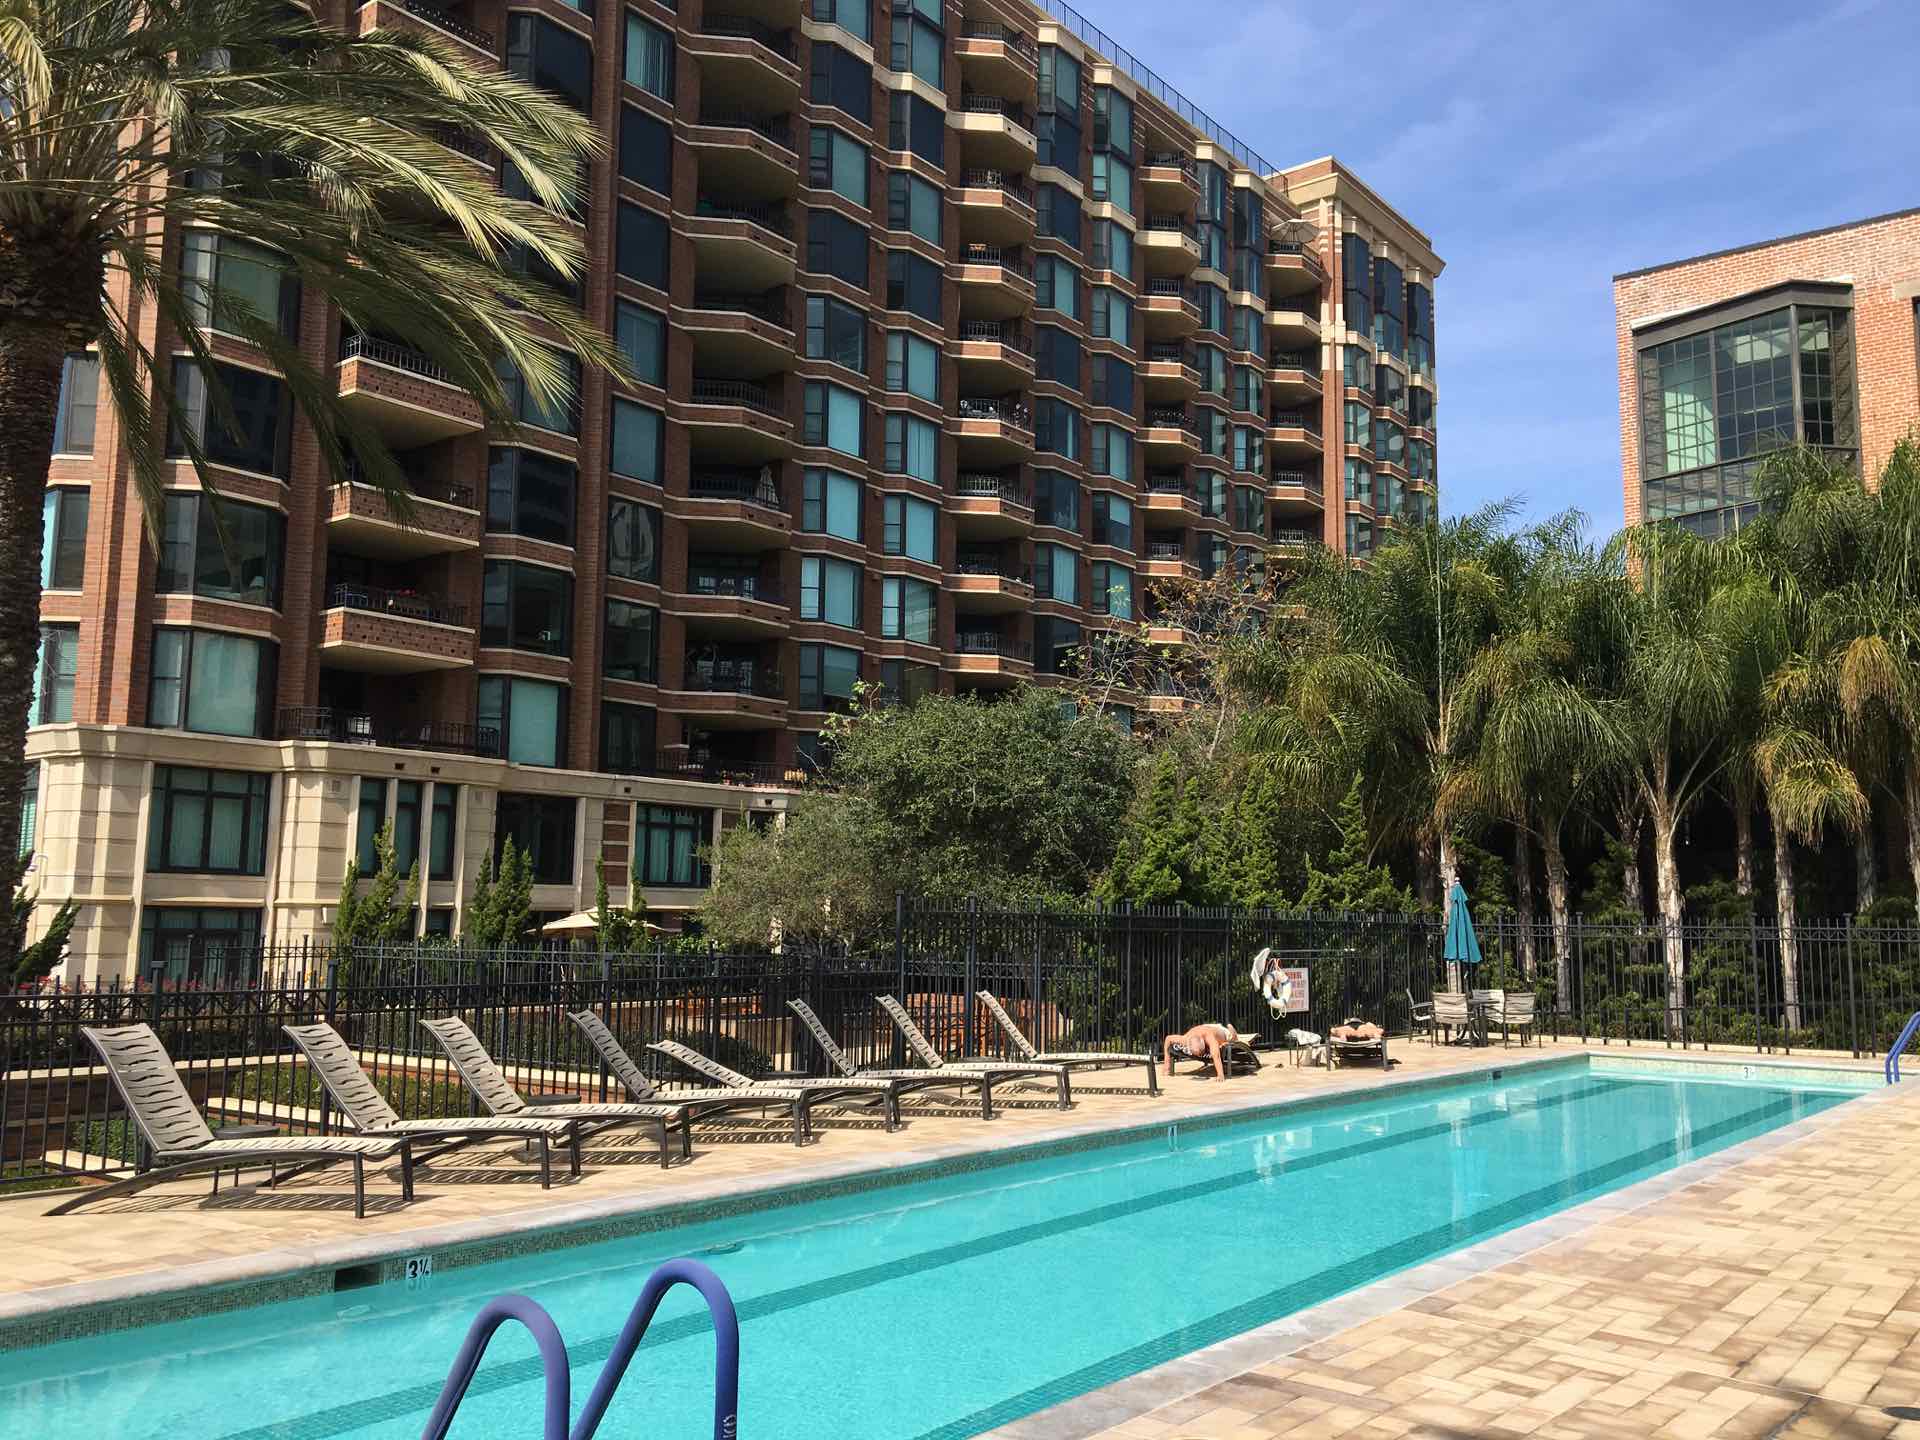 cityfront terrace lap pool